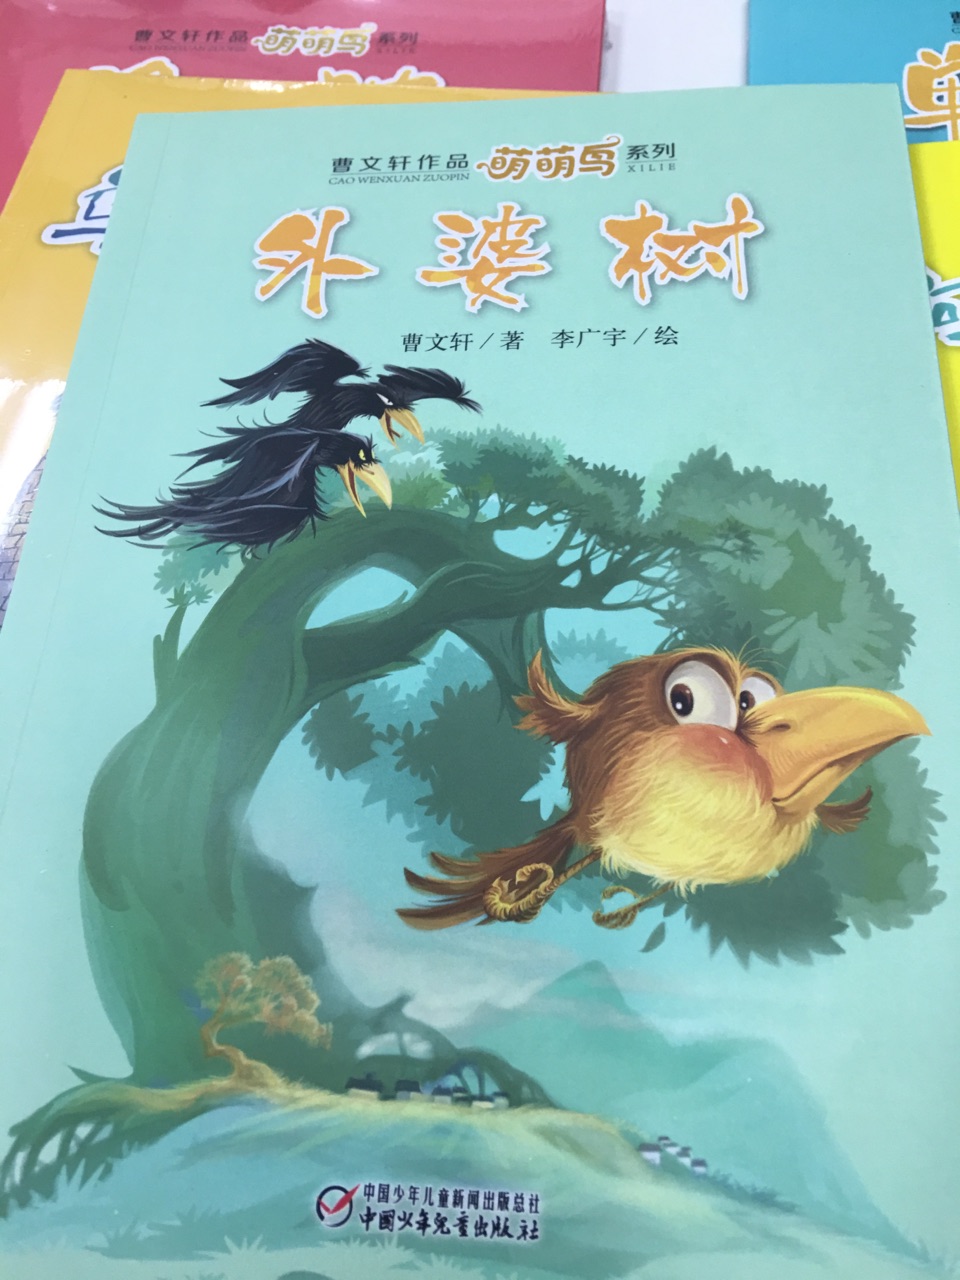 非常好，曹文轩专门给低年级孩子写的桥梁书，故事有趣，但是充满了哲理，形象生动，语言尤其精彩